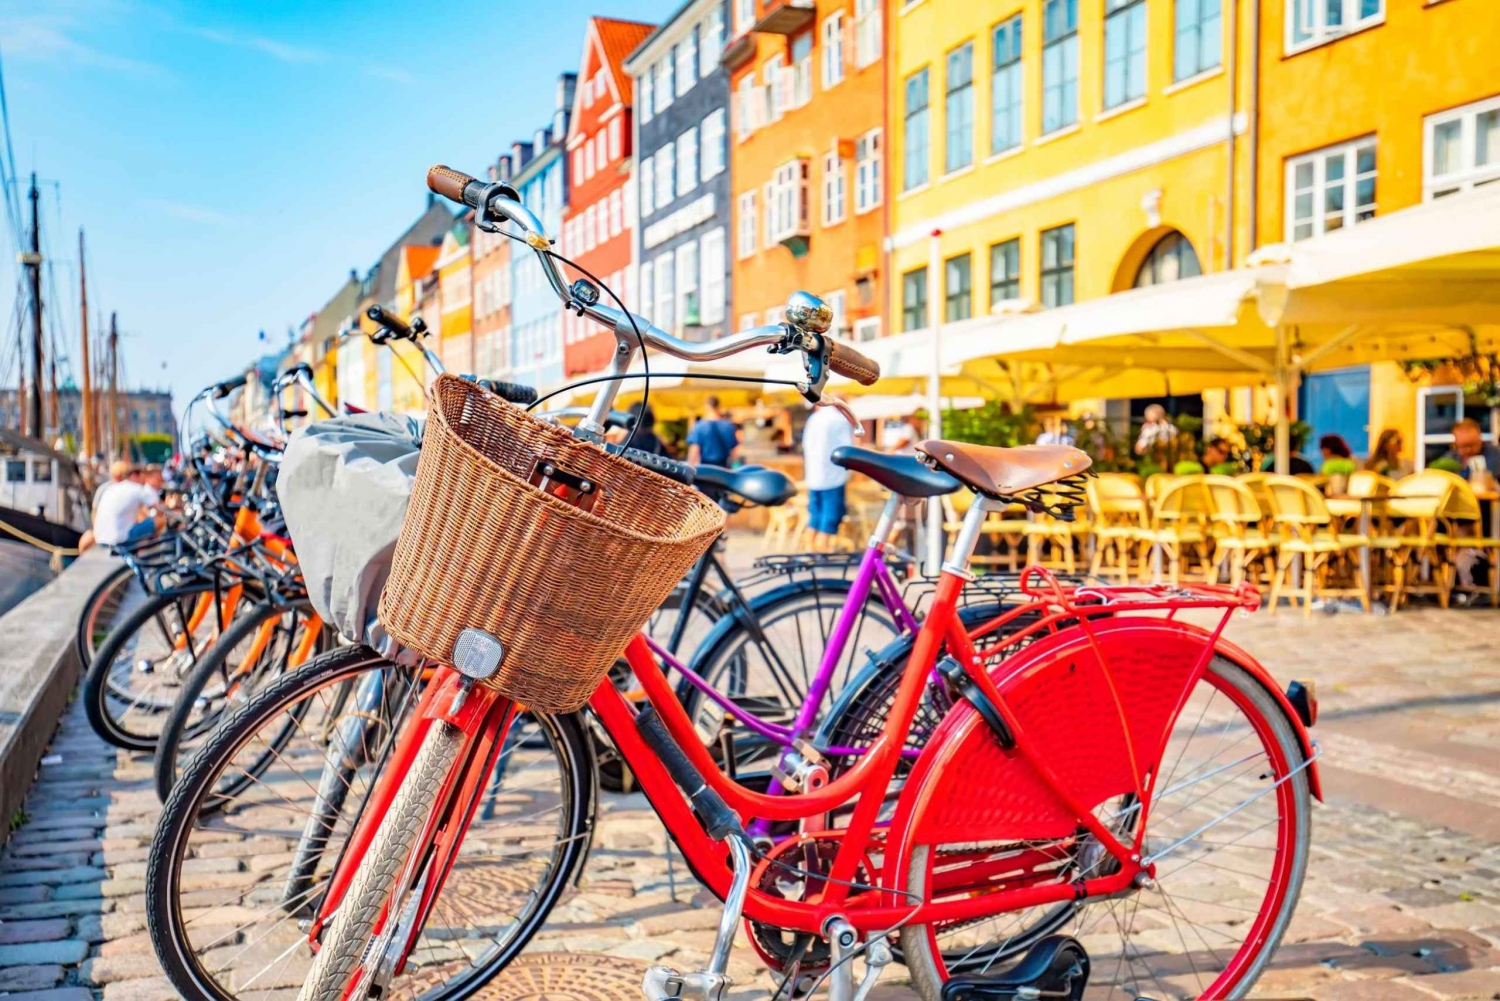 Grand Bike Tour i Københavns gamleby, attraksjoner, natur